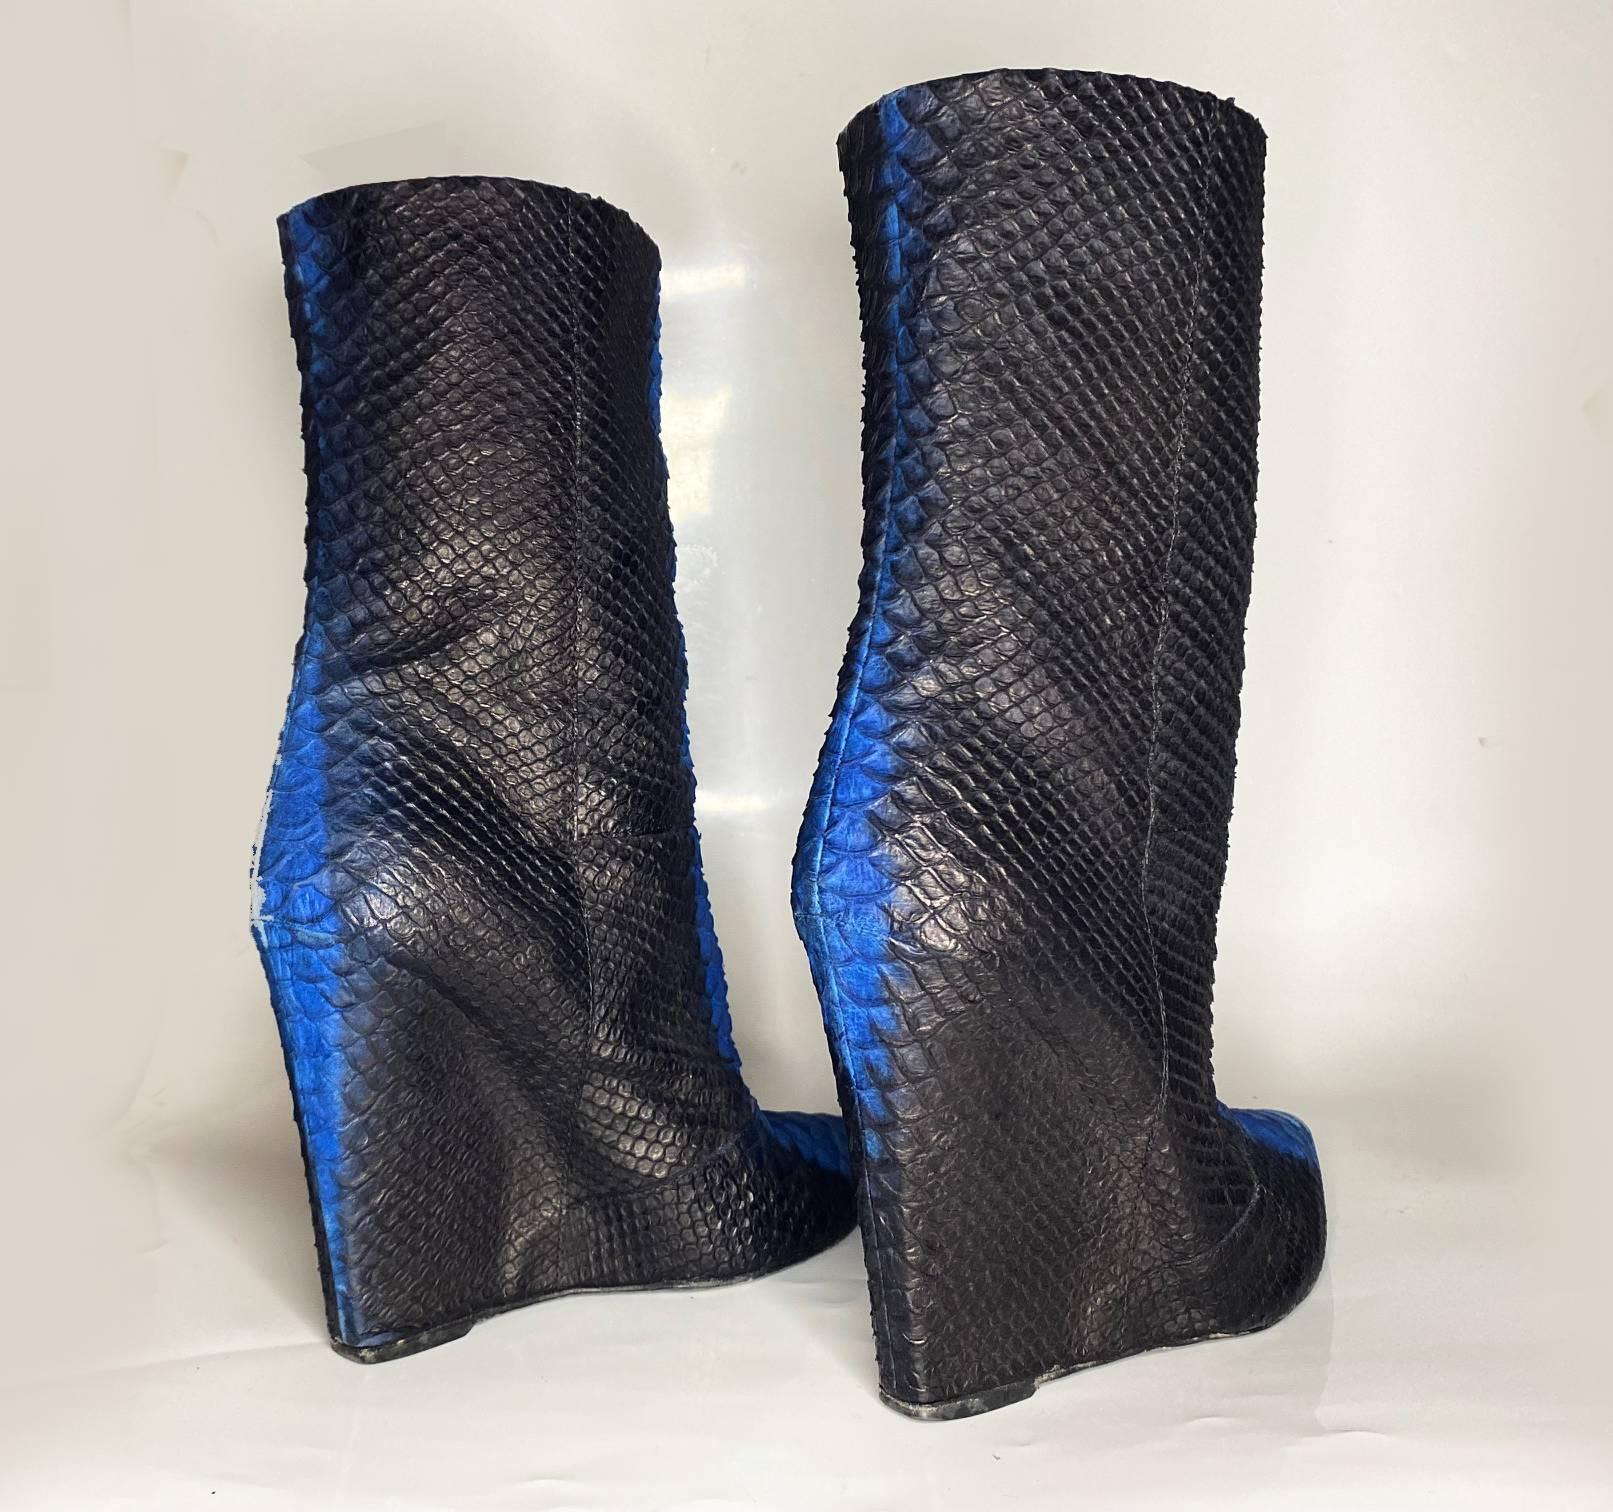 Ces bottes Giuseppe Zanotti des années 2000 bénéficient d'un savoir-faire authentique et de matériaux de qualité pour une finition en cuir texturé et élégant. La semelle extérieure en caoutchouc assure à la fois style et confort, ce qui en fait le